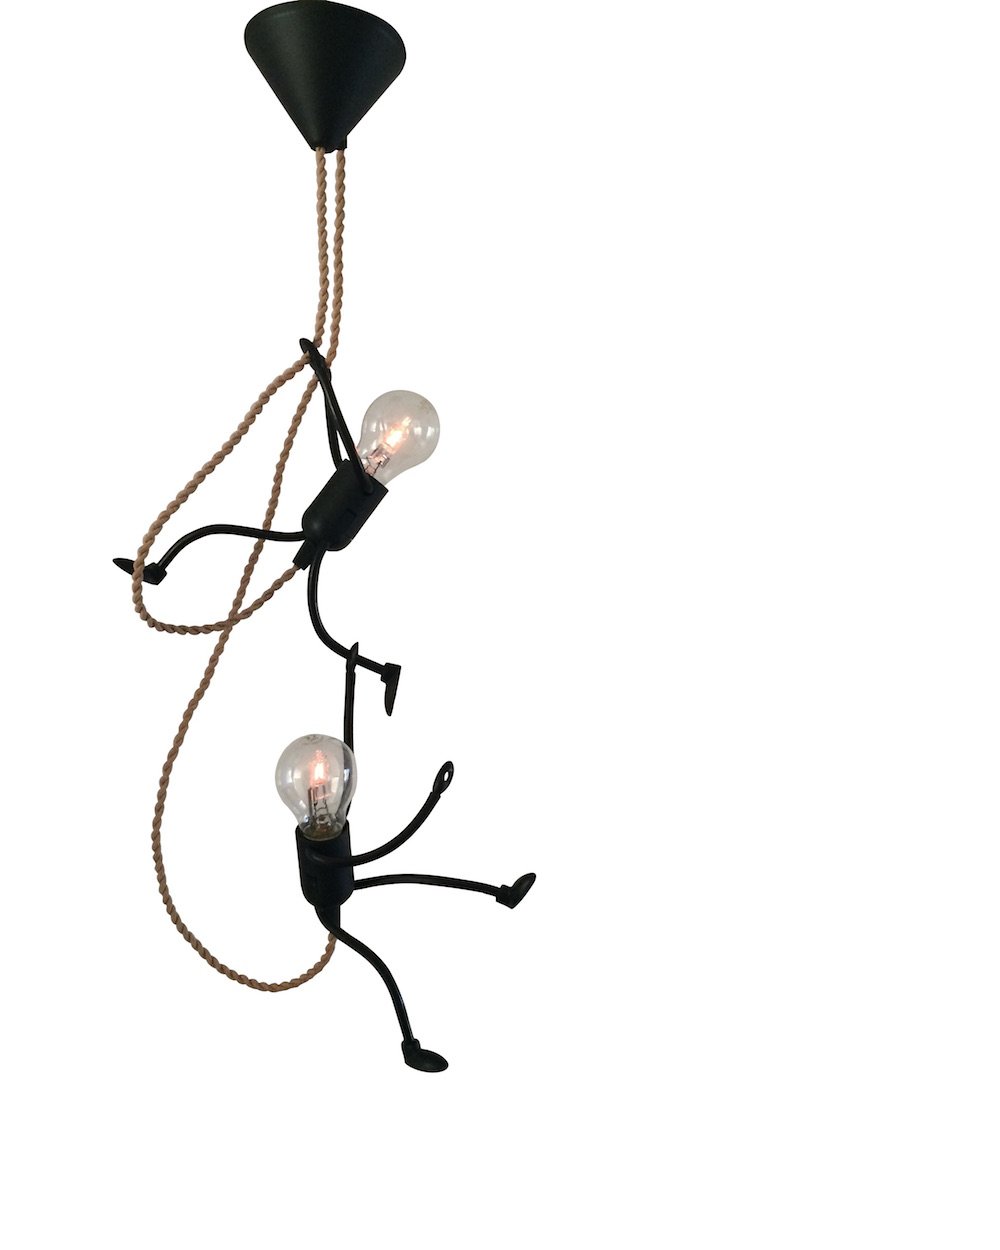 Mr. bright hanglamp met buigbare poppetjes bij Studio Perspective